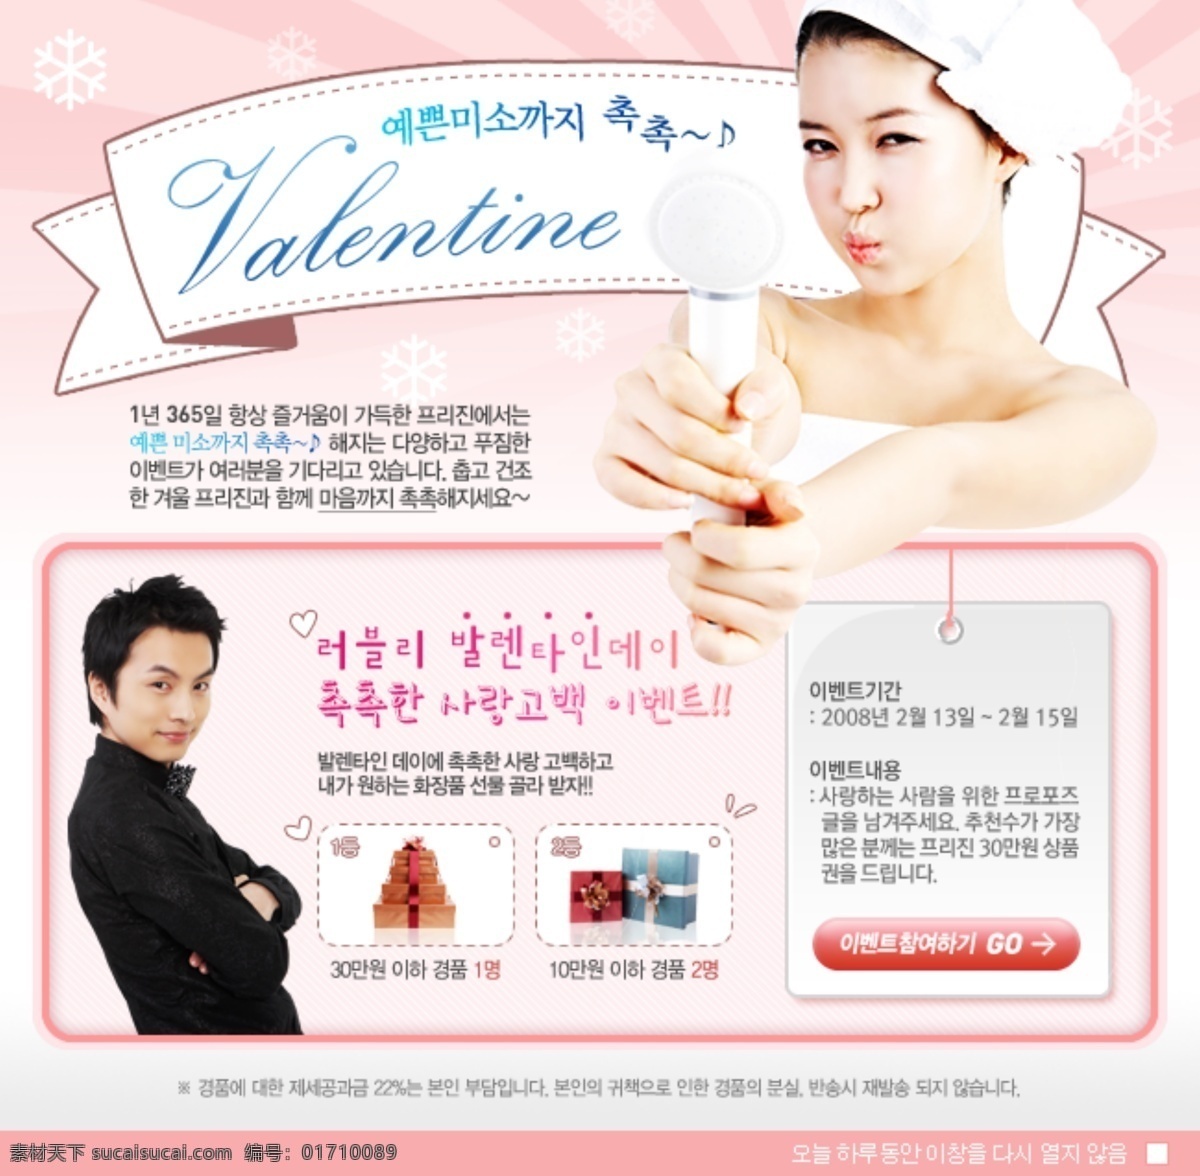 浪漫 情人节 网页设计 模版 粉色背景 粉色边框 韩文字体 美女 帅哥 粉色按钮 网页素材 网页模板